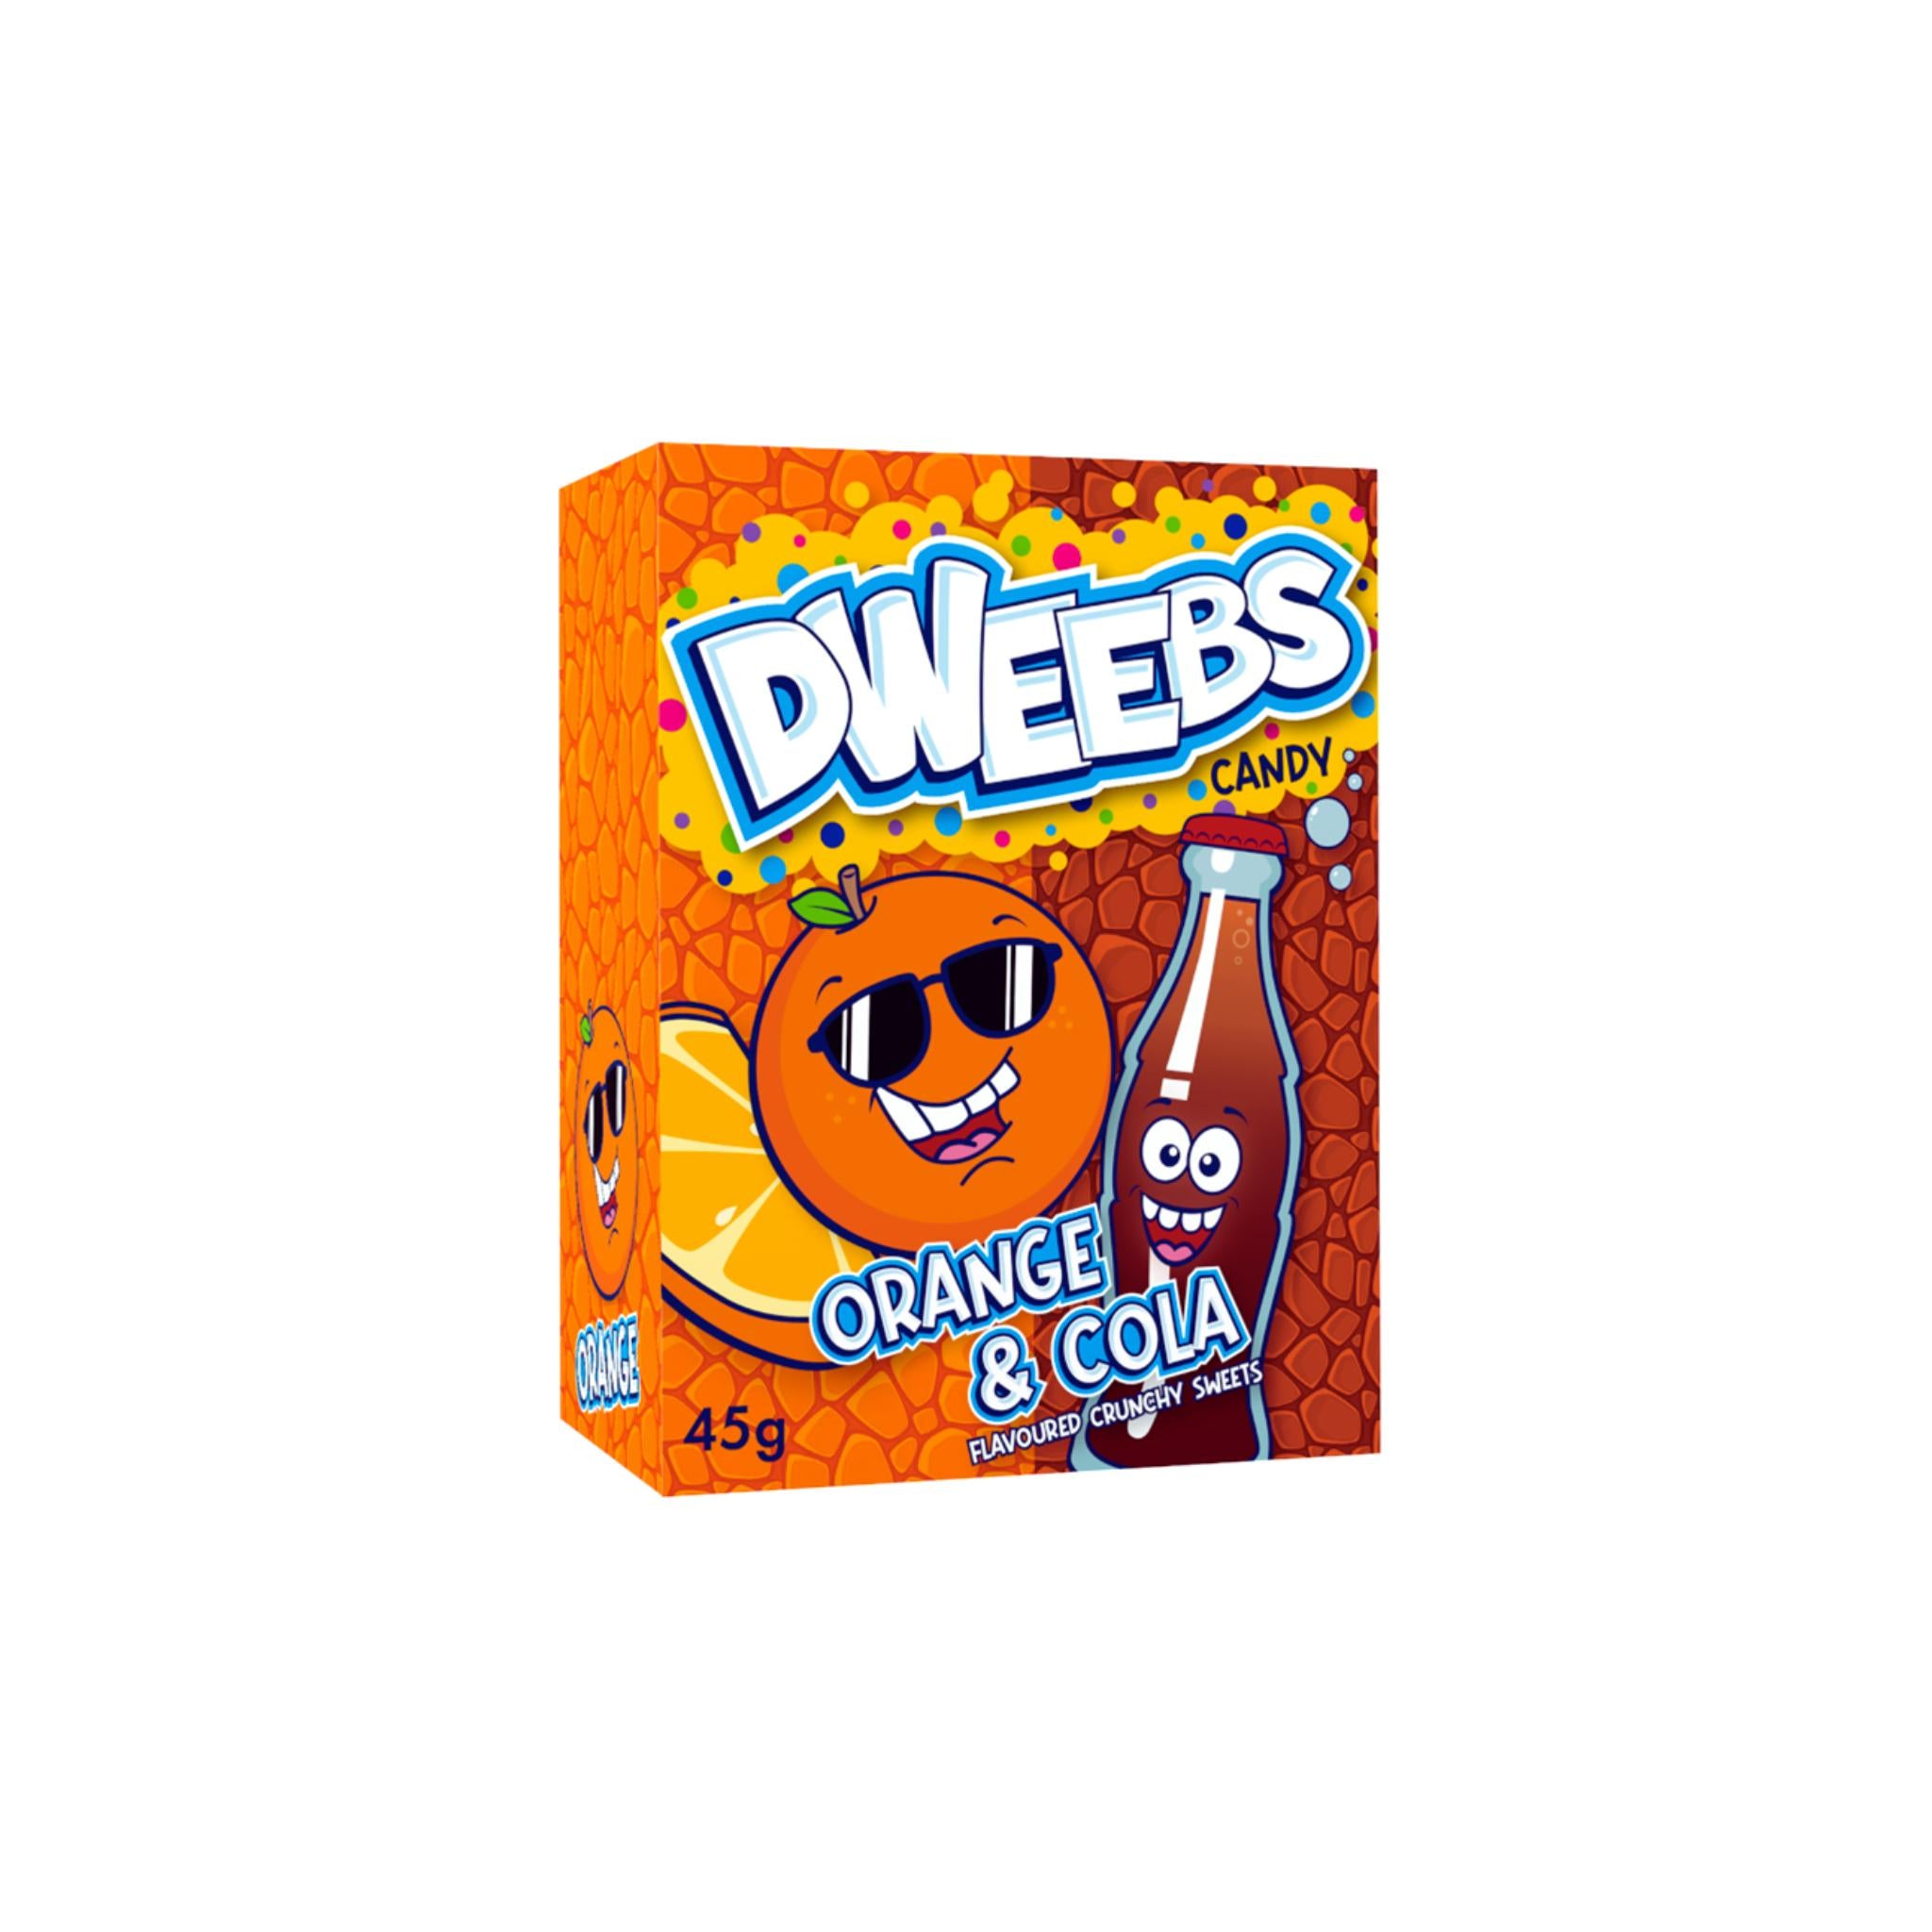 Dweebs Orange & Cola - 45g